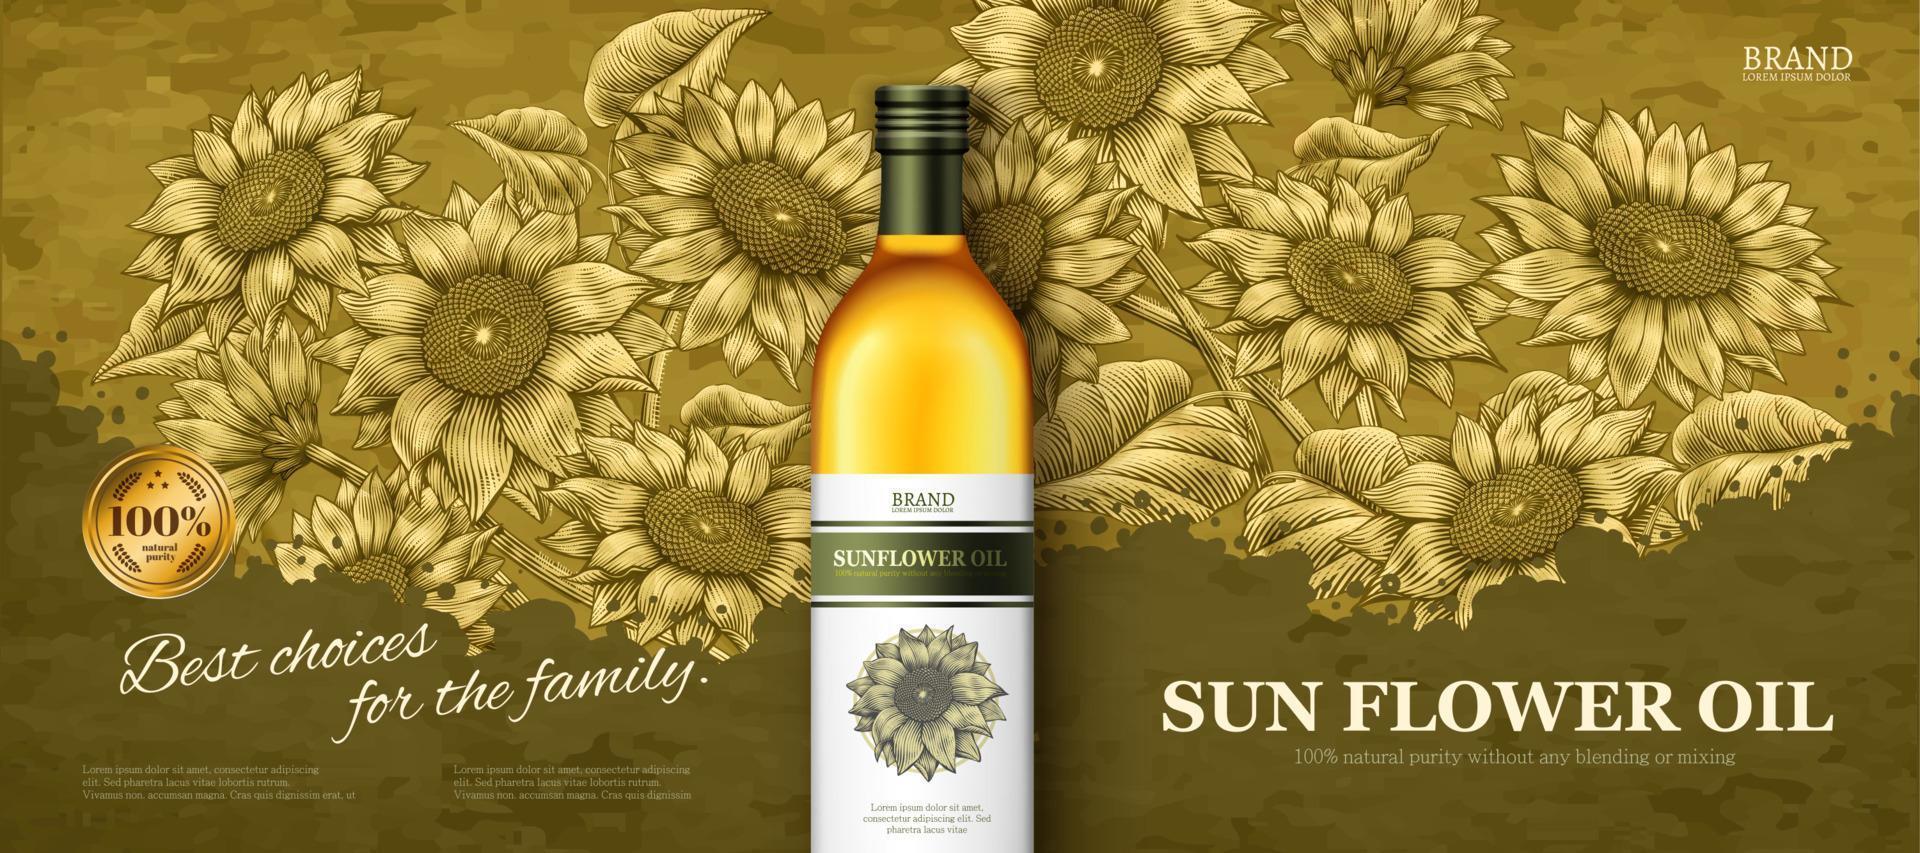 bannières publicitaires d'huile de fleur de soleil en illustration 3d sur fond de jardin de tournesol de style gravure sur bois élégant vecteur